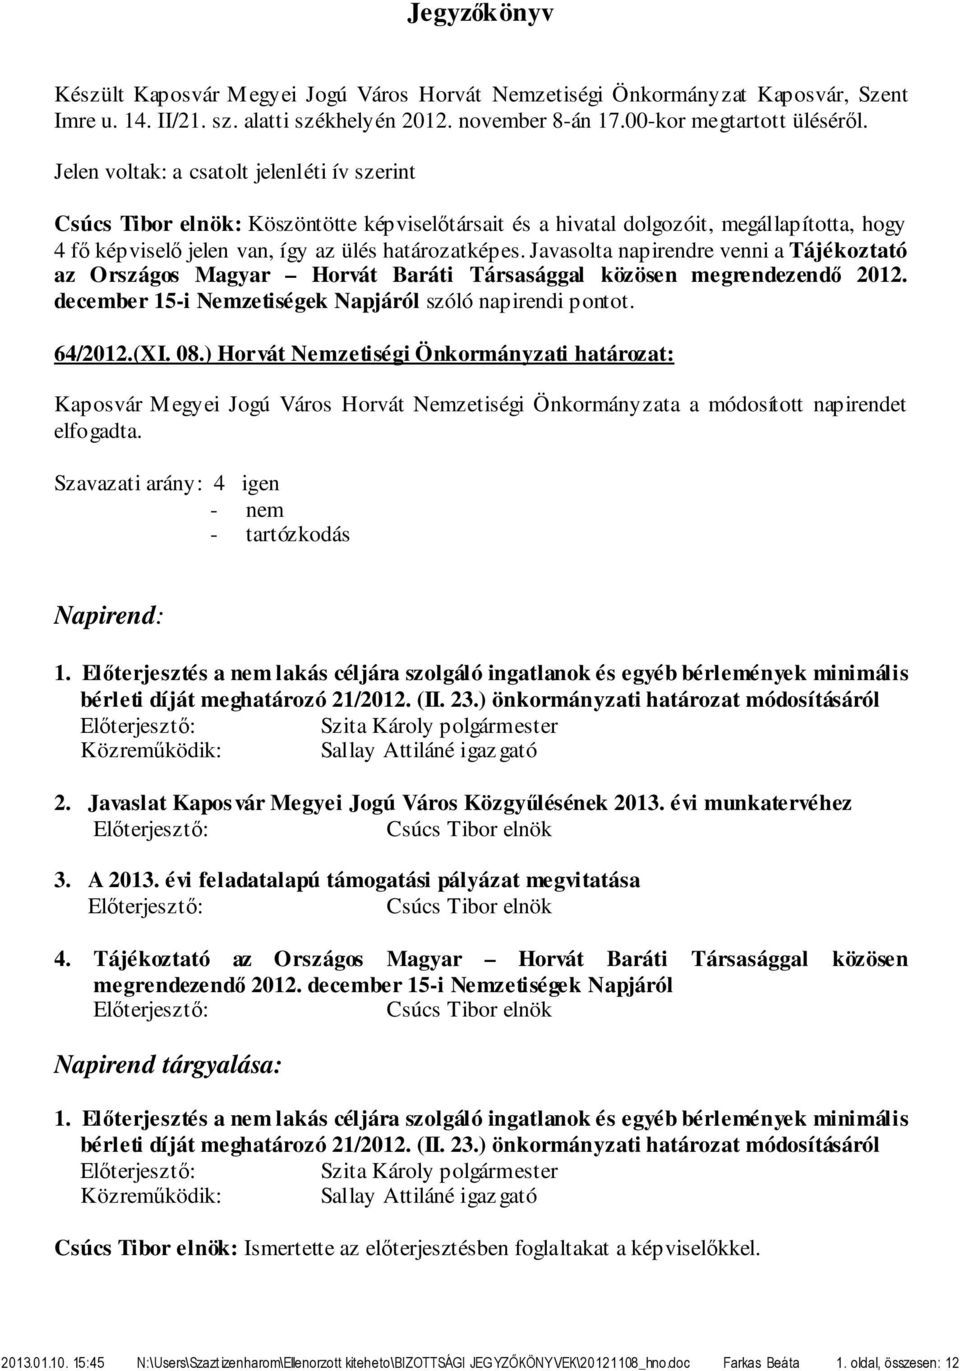 Javasolta napirendre venni a Tájékoztató az Országos Magyar Horvát Baráti Társasággal közösen megrendezendő 2012. december 15-i Nemzetiségek Napjáról szóló napirendi pontot. 64/2012.(XI. 08.